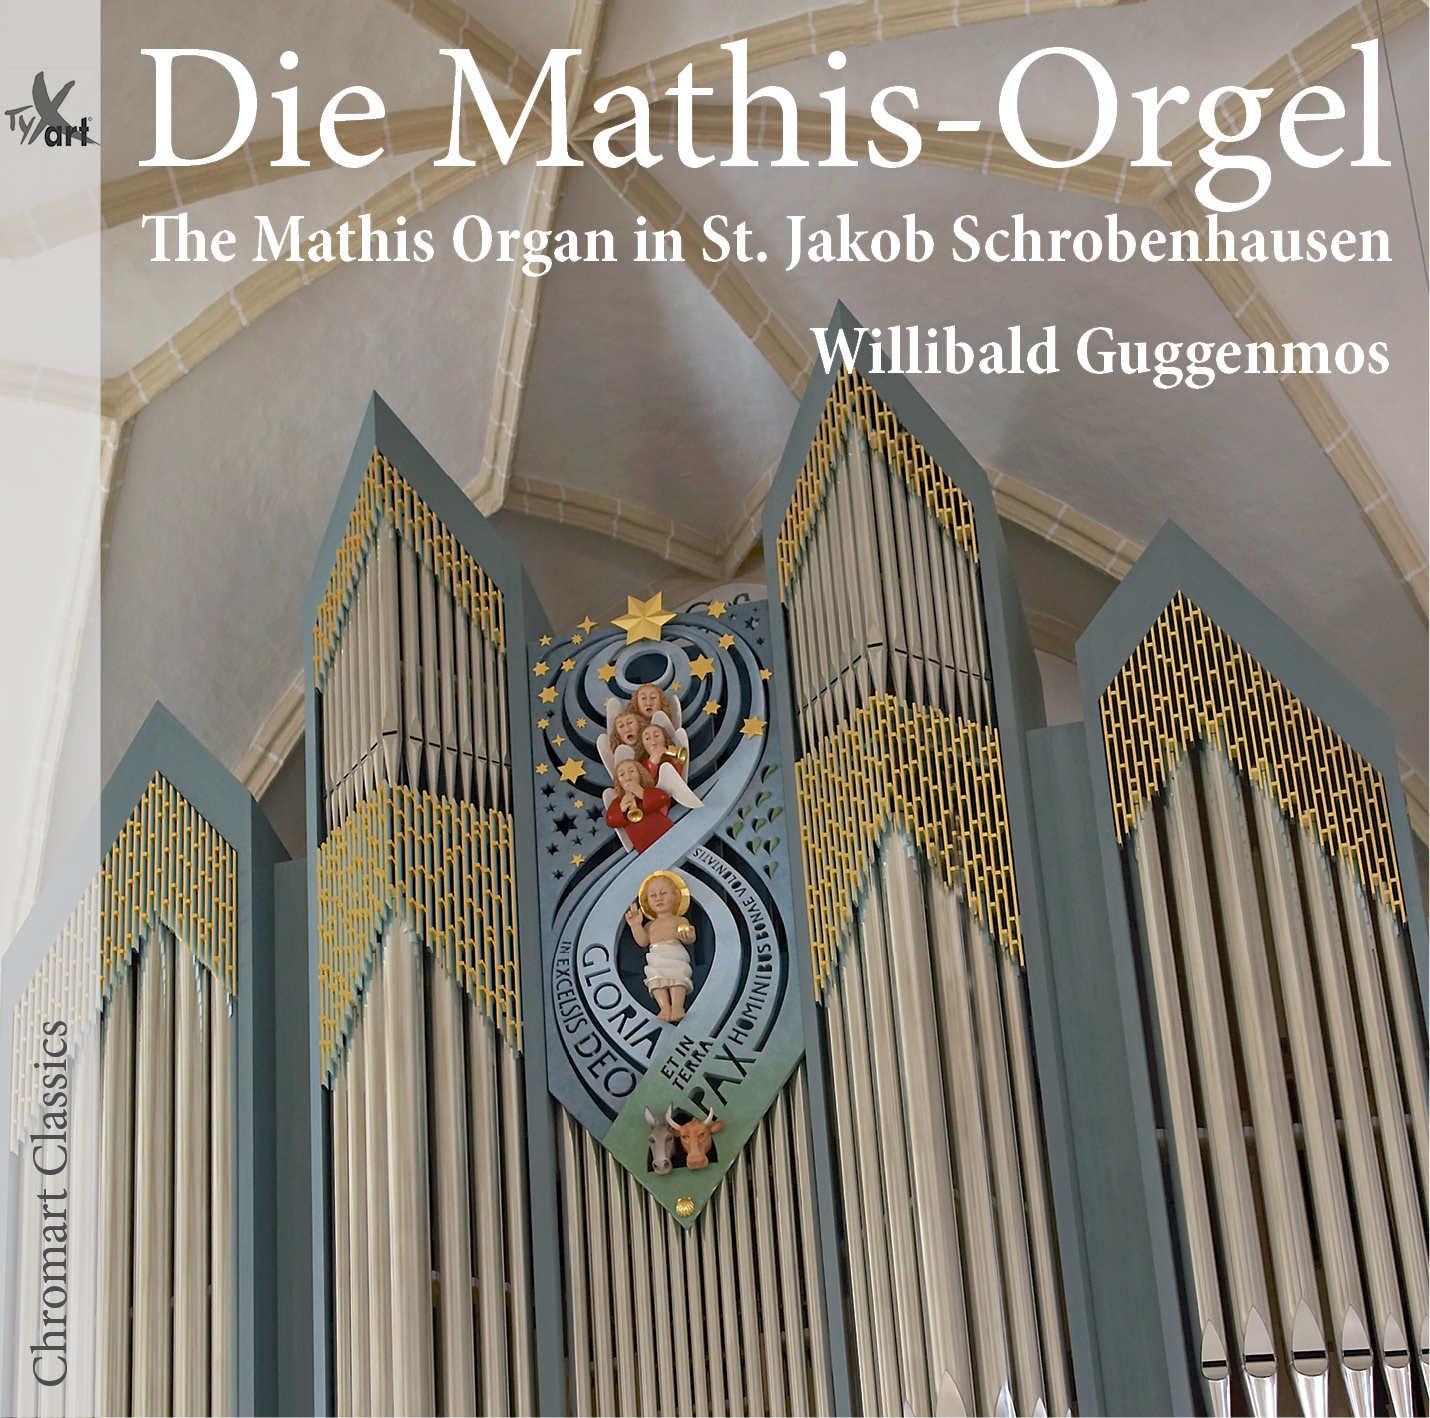 Die Mathis-Orgel in St. Jakob Schrobenhausen - Willibald Guggenmos